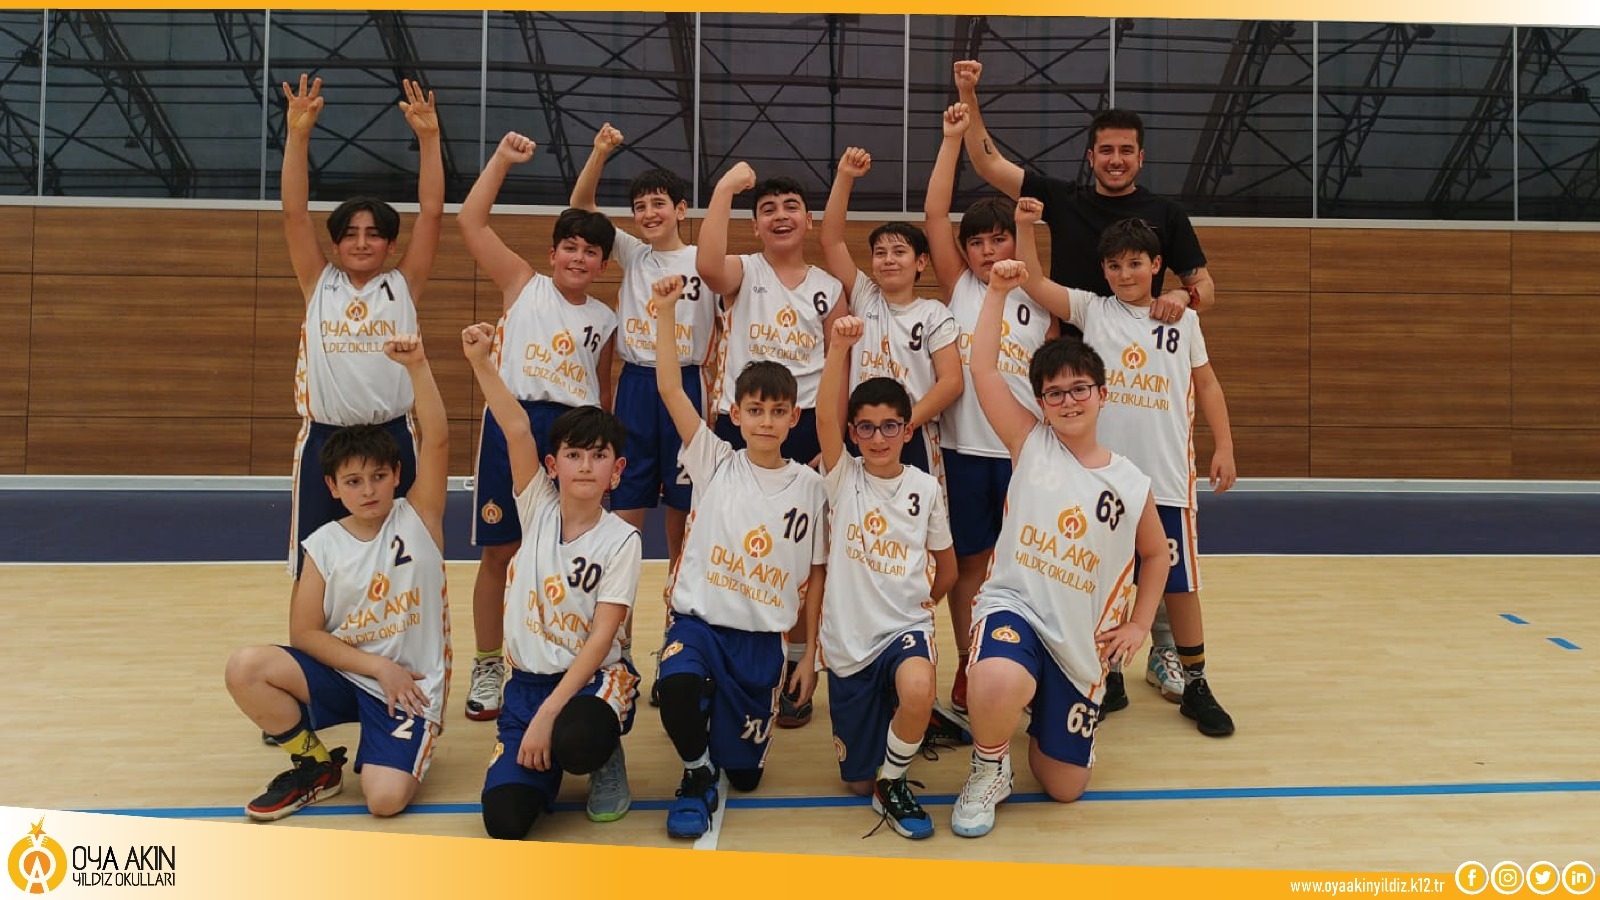 Oya Akın Portakal Çiçeği Küçük Erkekler Basketbol Takımımız Başarısı